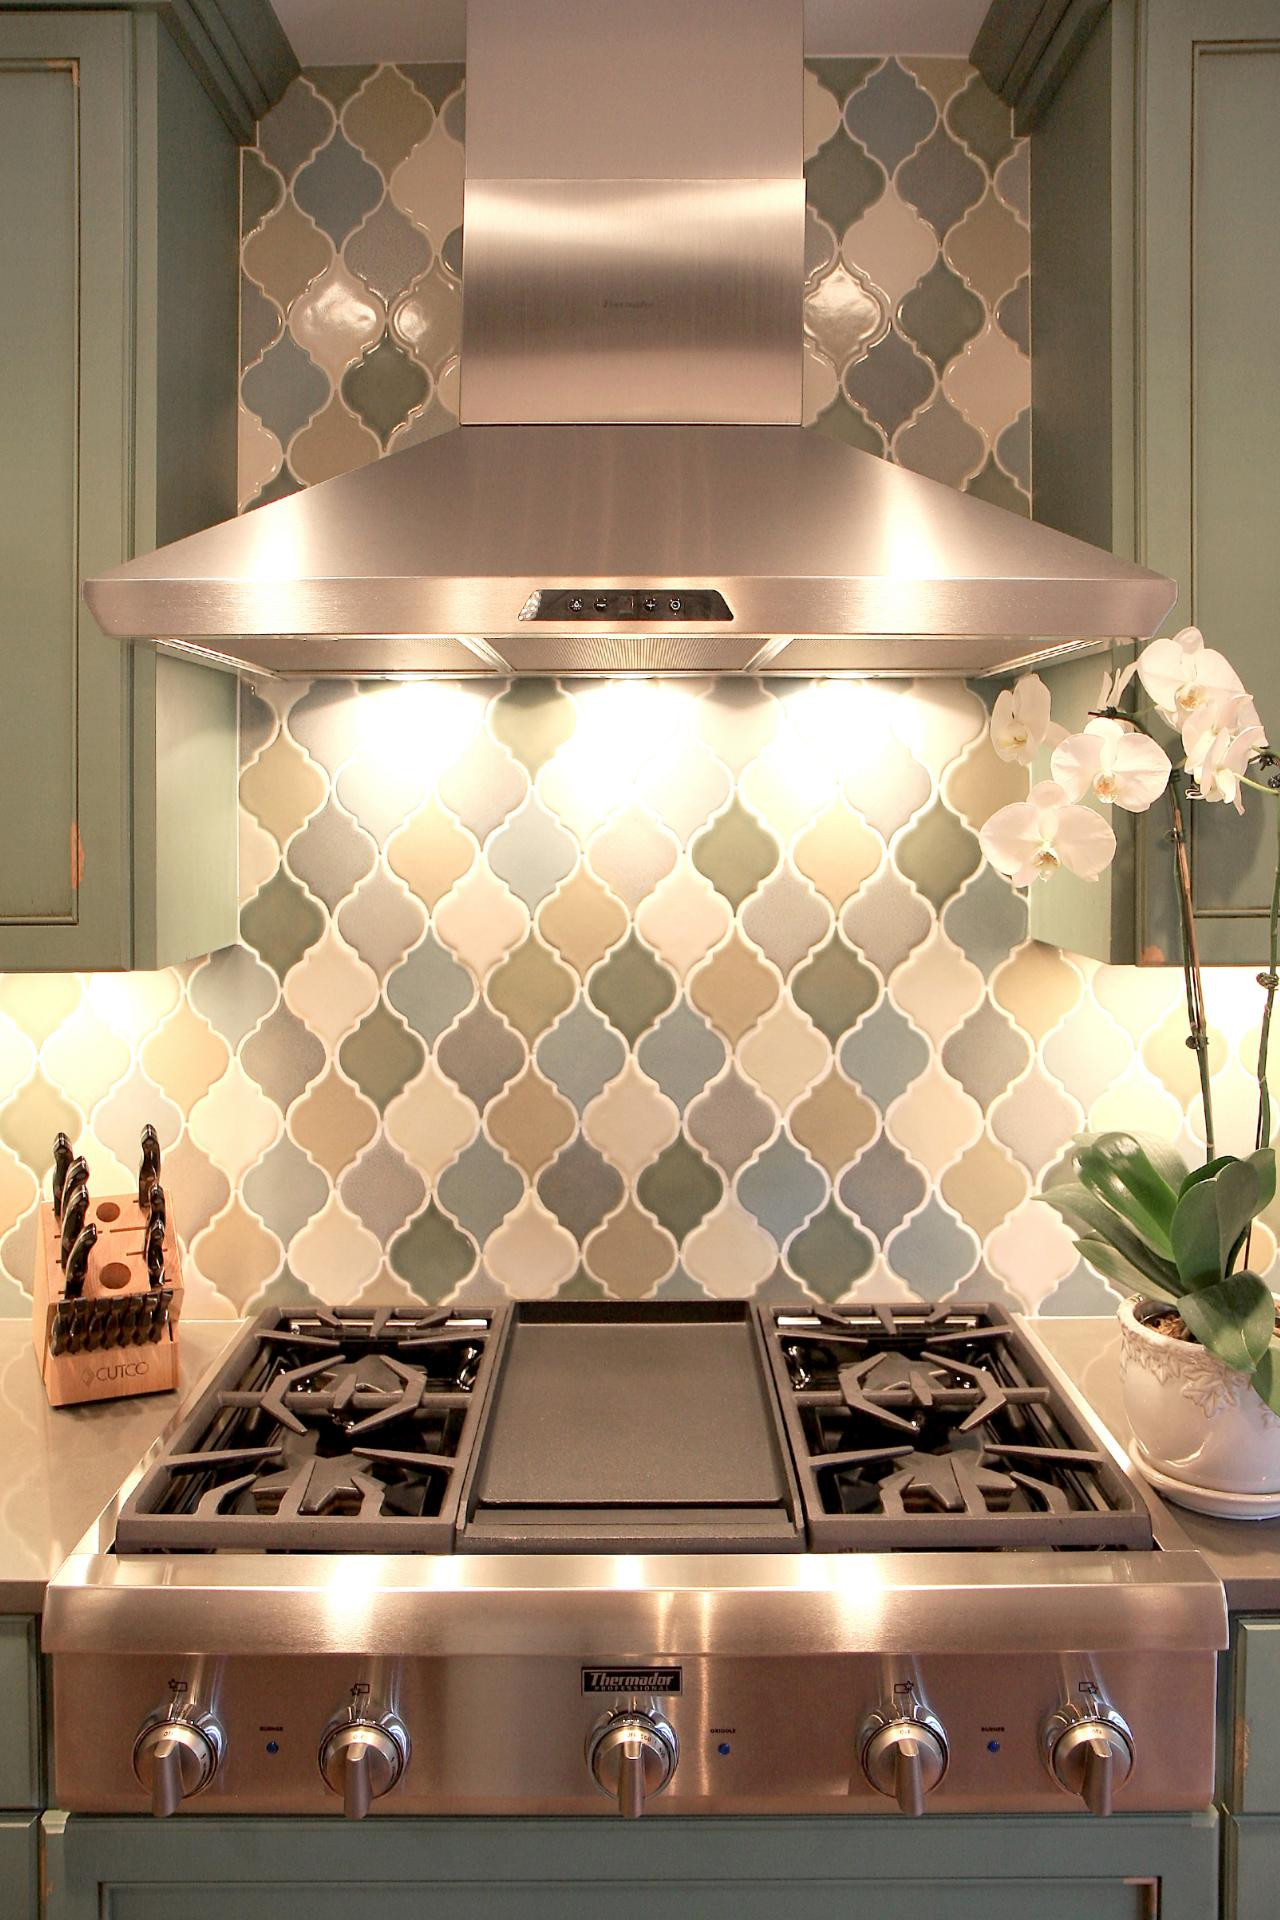 Arabesque Tile Kitchen Backsplash
 Kitchen sink backsplash arabesque tile kitchen backsplash